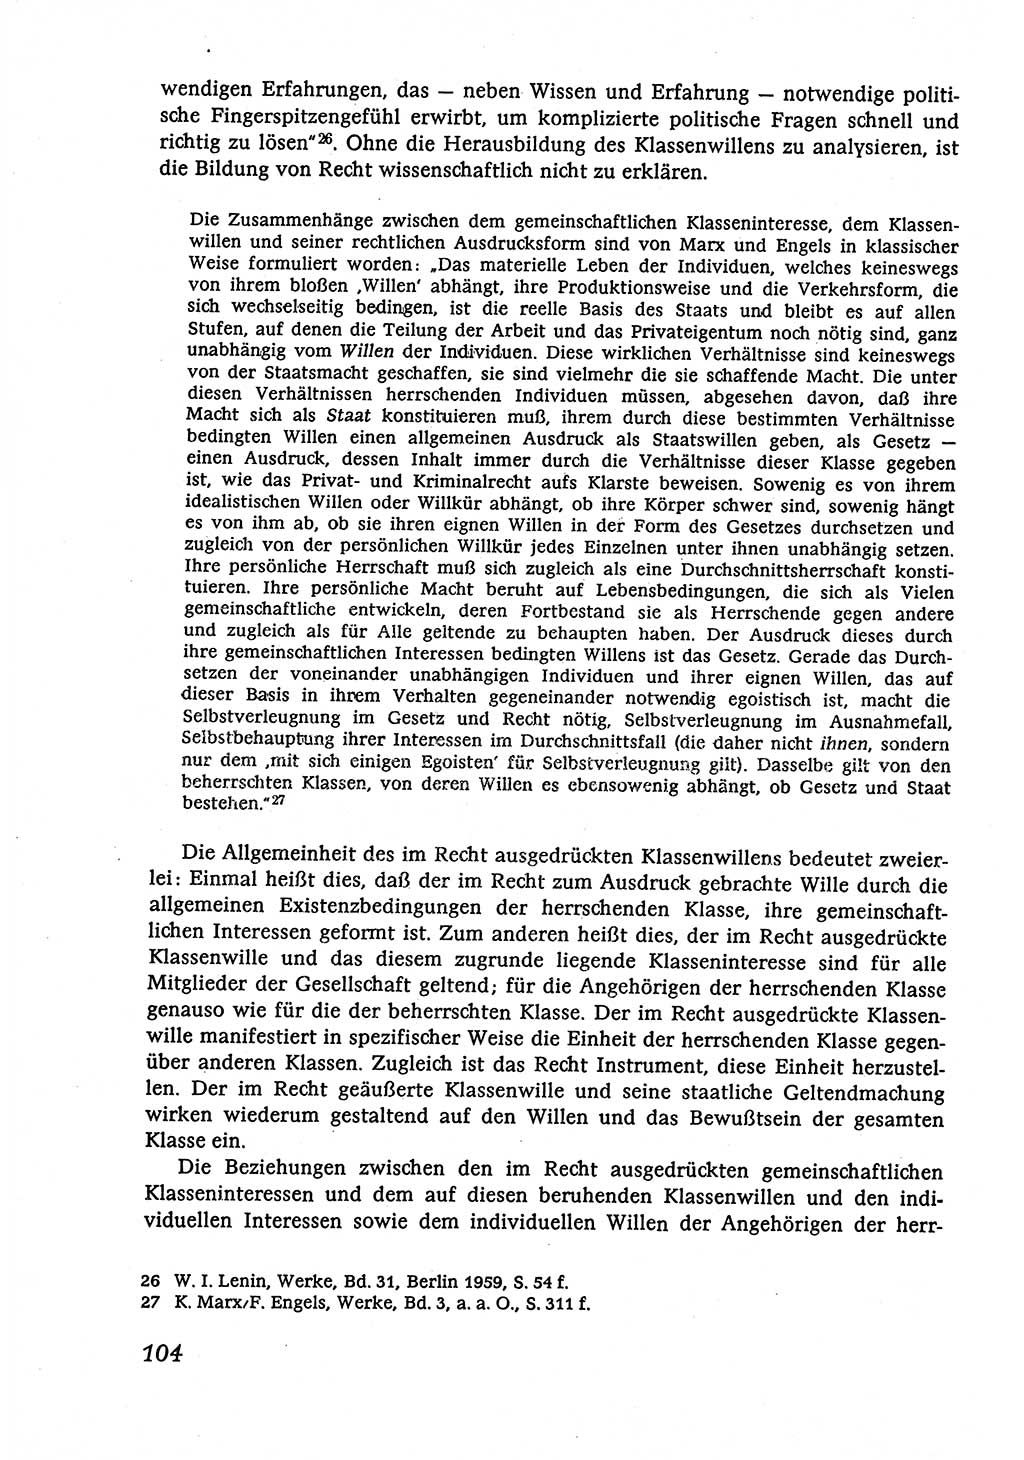 Marxistisch-leninistische (ML) Staats- und Rechtstheorie [Deutsche Demokratische Republik (DDR)], Lehrbuch 1980, Seite 104 (ML St.-R.-Th. DDR Lb. 1980, S. 104)